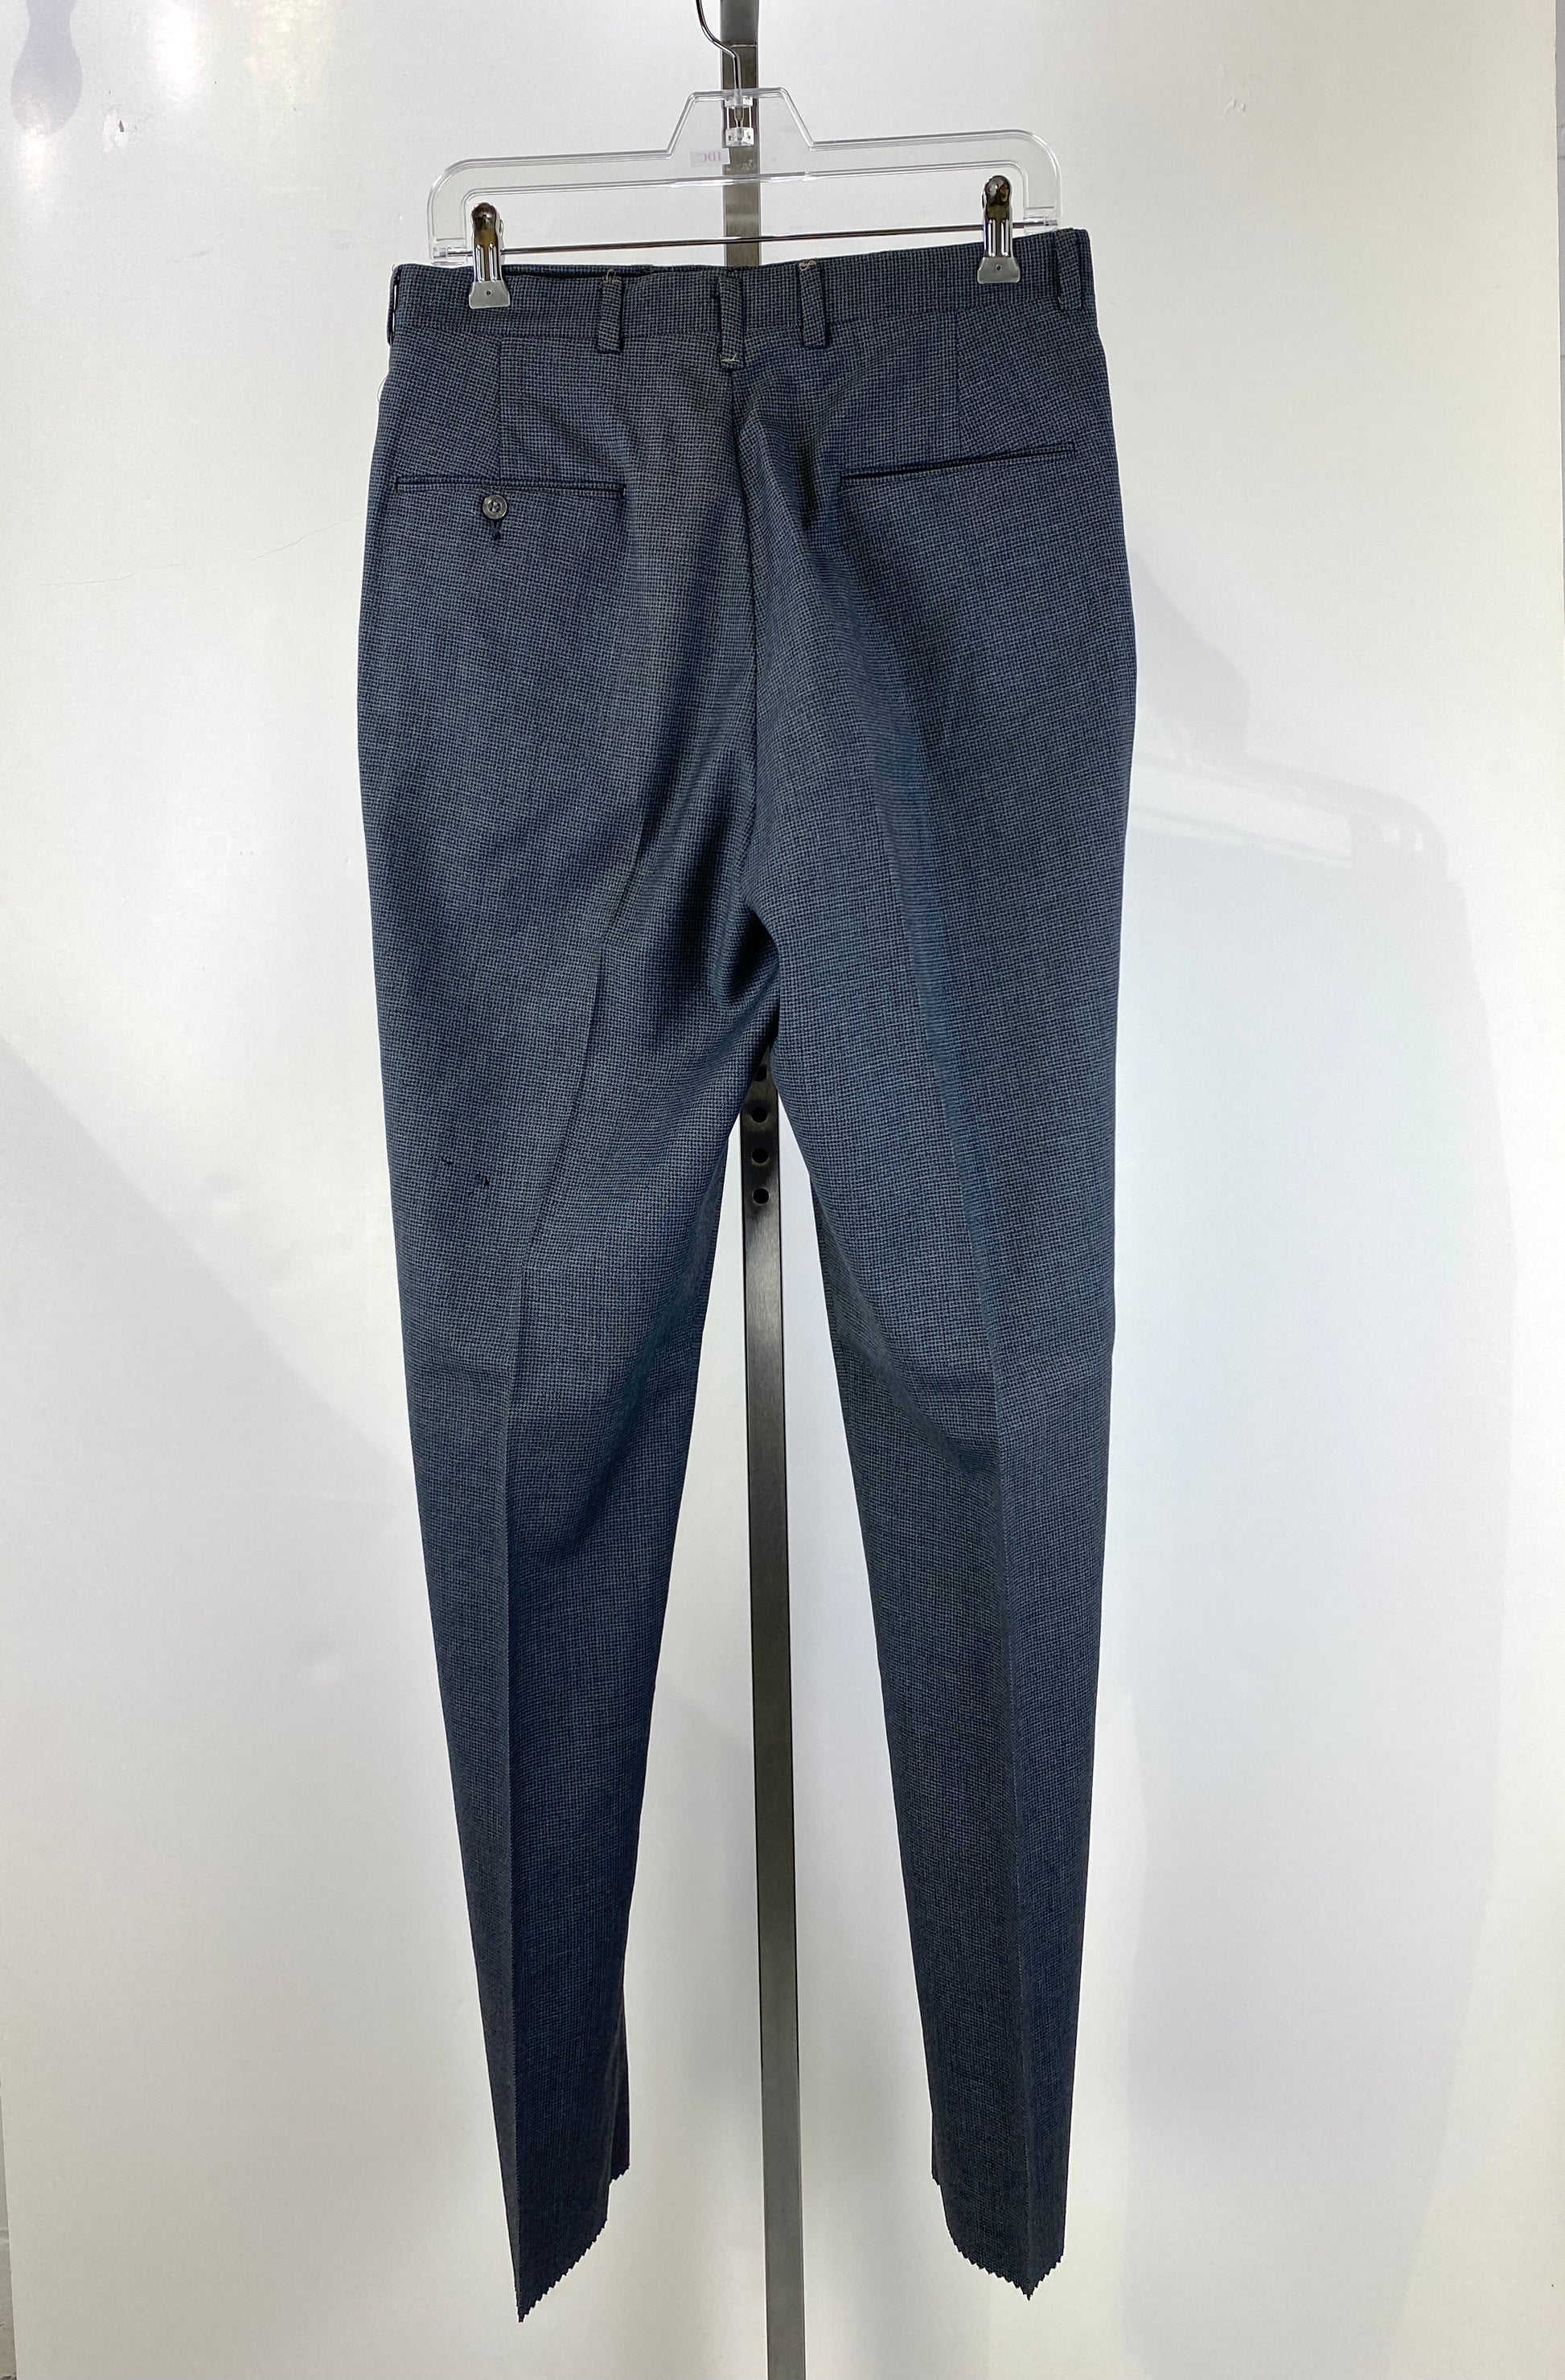 Vintage 1960s Deadstock Grey Straight-Leg Slacks, Men's Wool Check Trousers, NOS